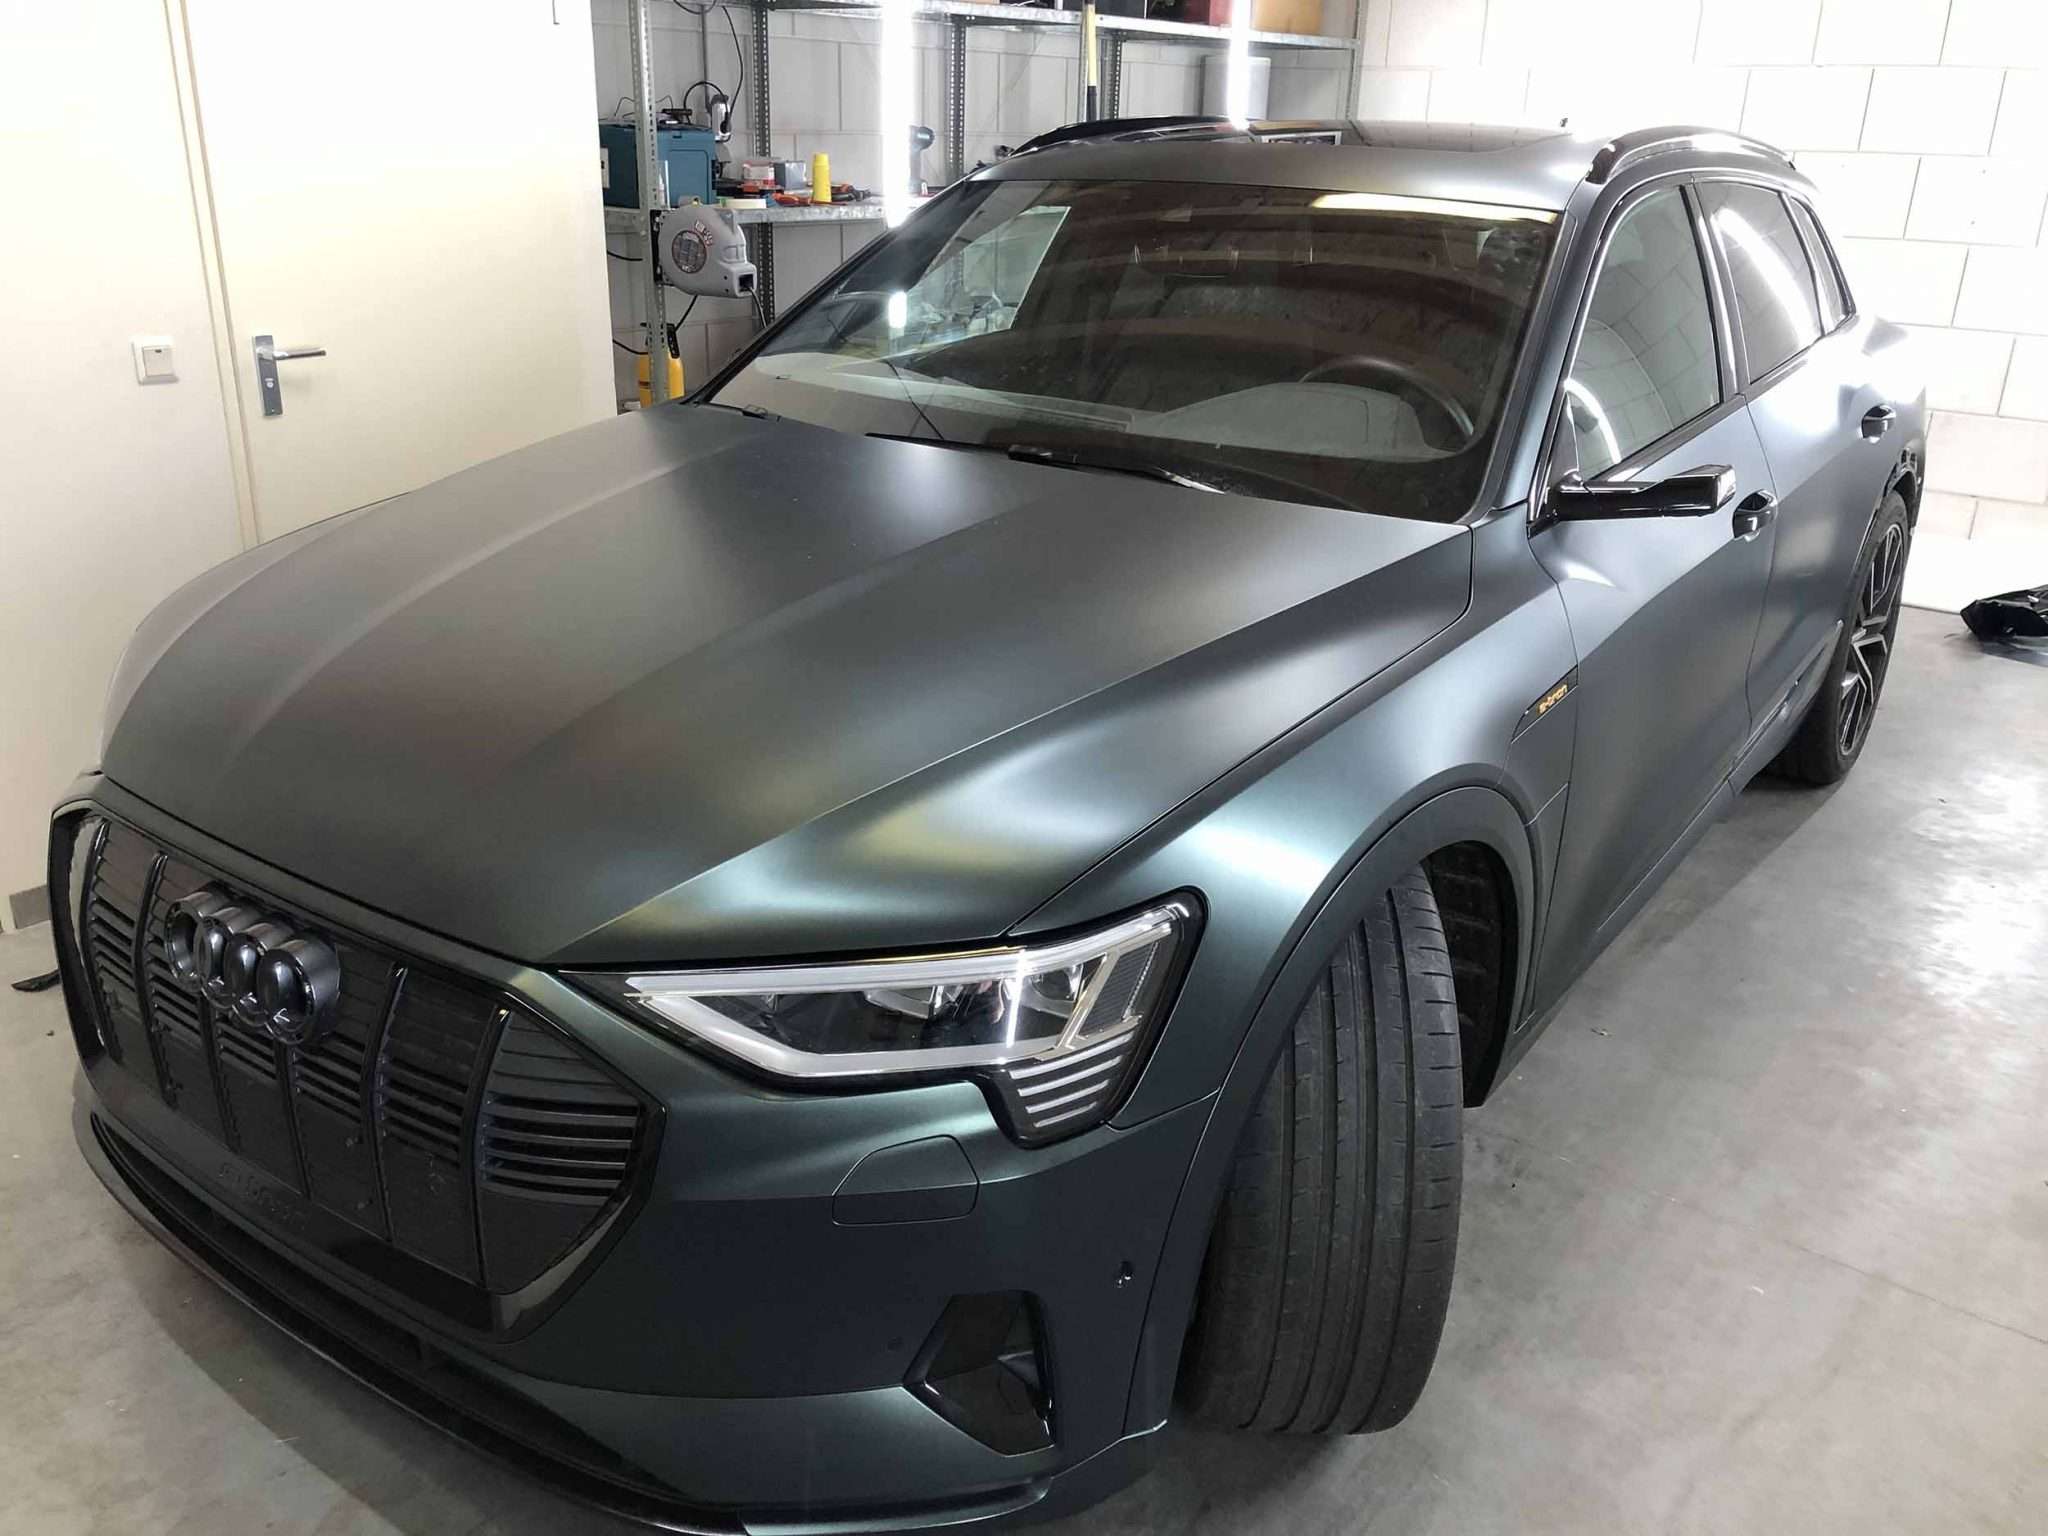 Gewrapte Audi e-tron in een garage